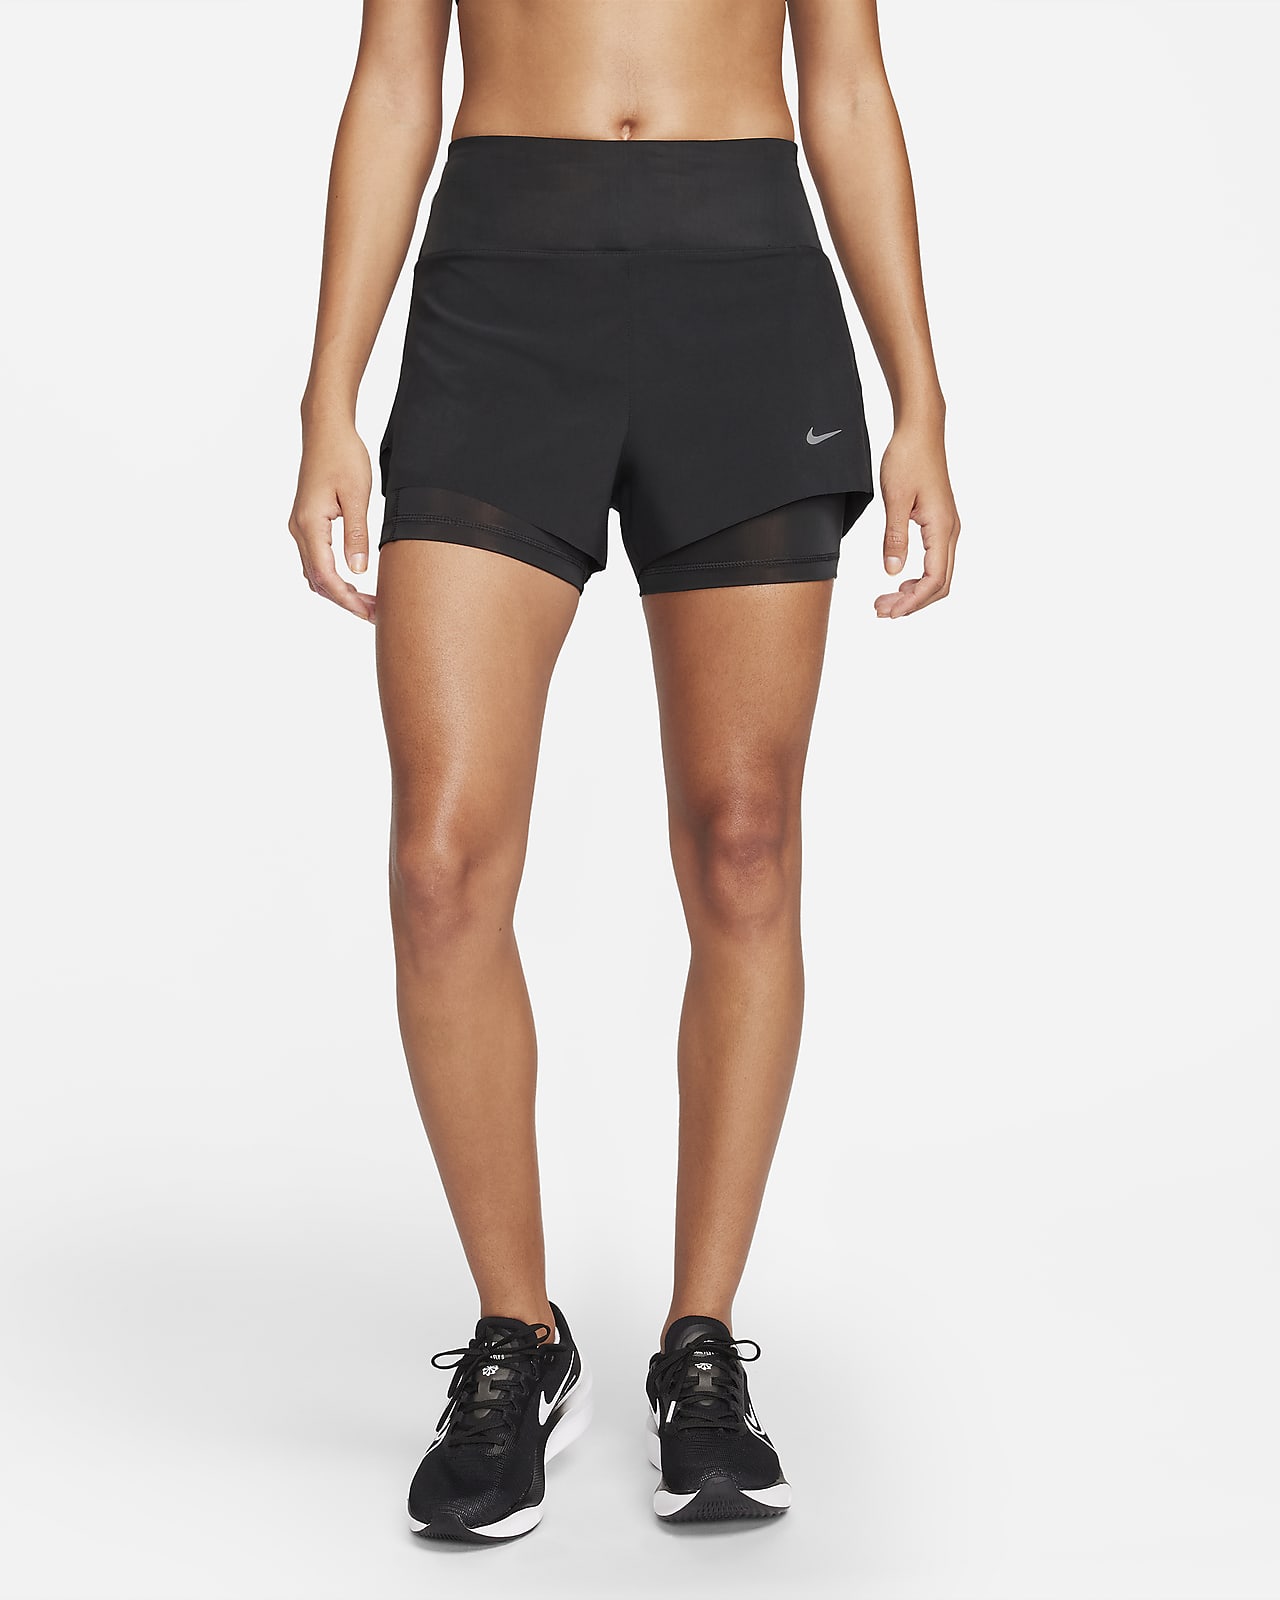 Dámské 8cm běžecké kraťasy Nike Dri-FIT Swift 2 v 1 se středně vysokým pasem a kapsami